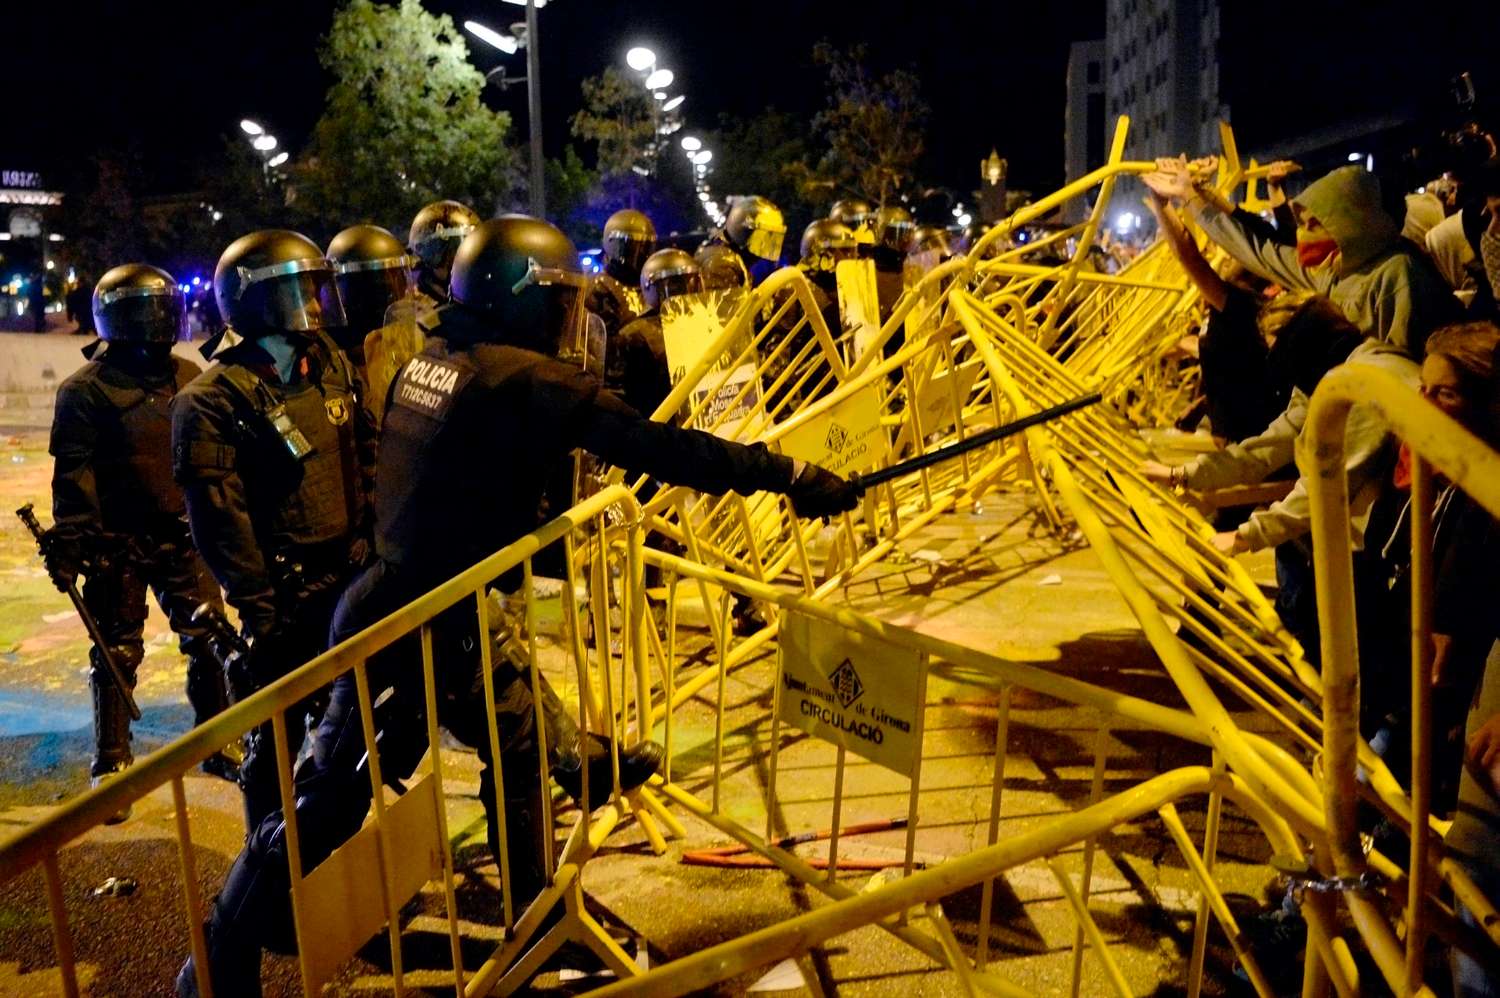 Críticas al juego “peligroso” del gobierno independentista catalán